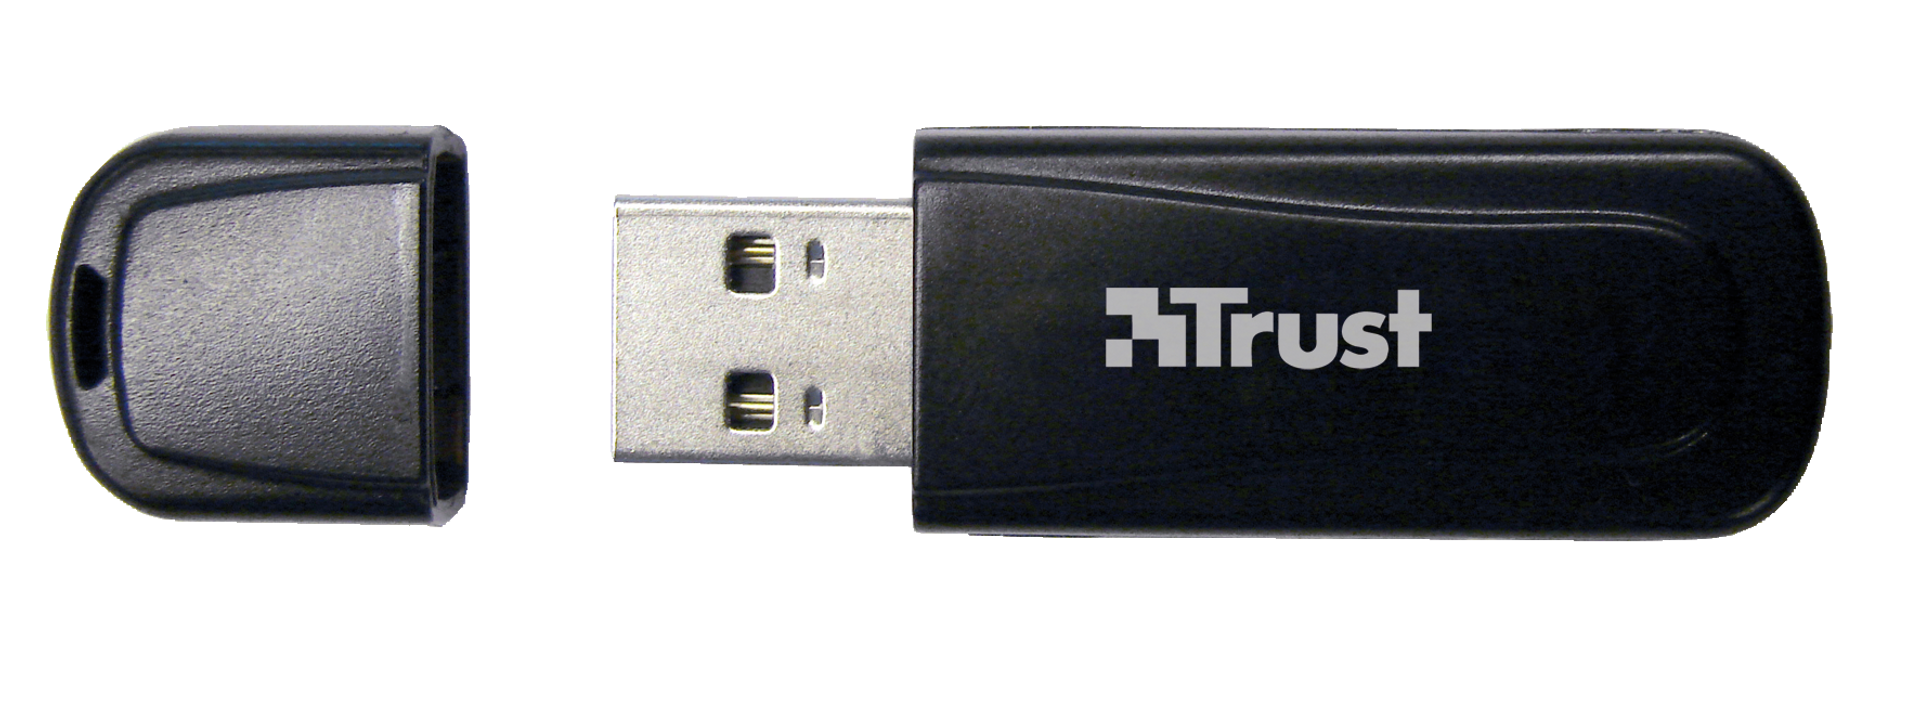 Bluetooth 2.0 EDR USB Adapter BT-2100p-Top